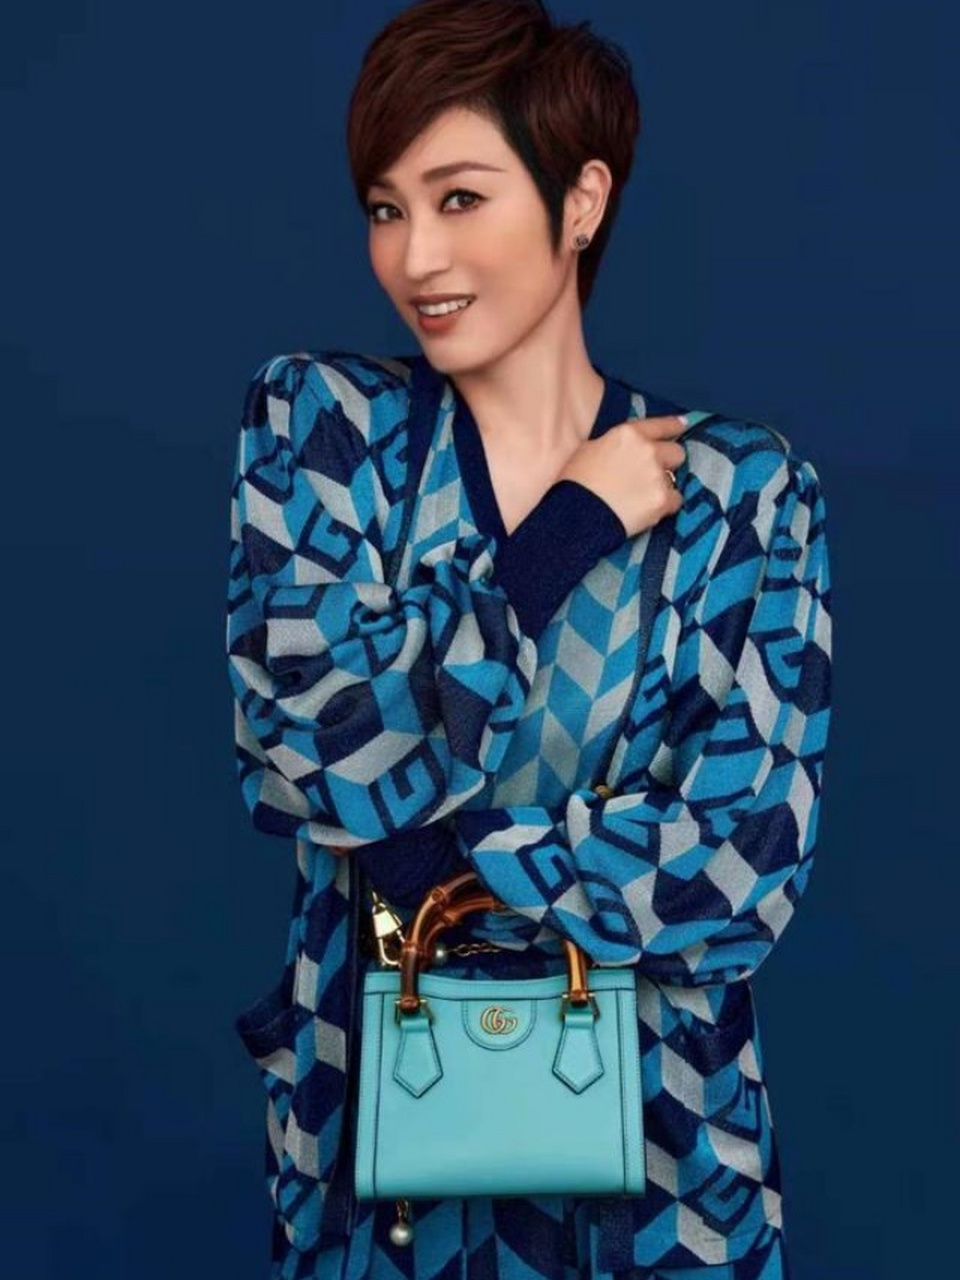 陈法蓉短发图片 陈法蓉是一位极具个性和魅力的女演员